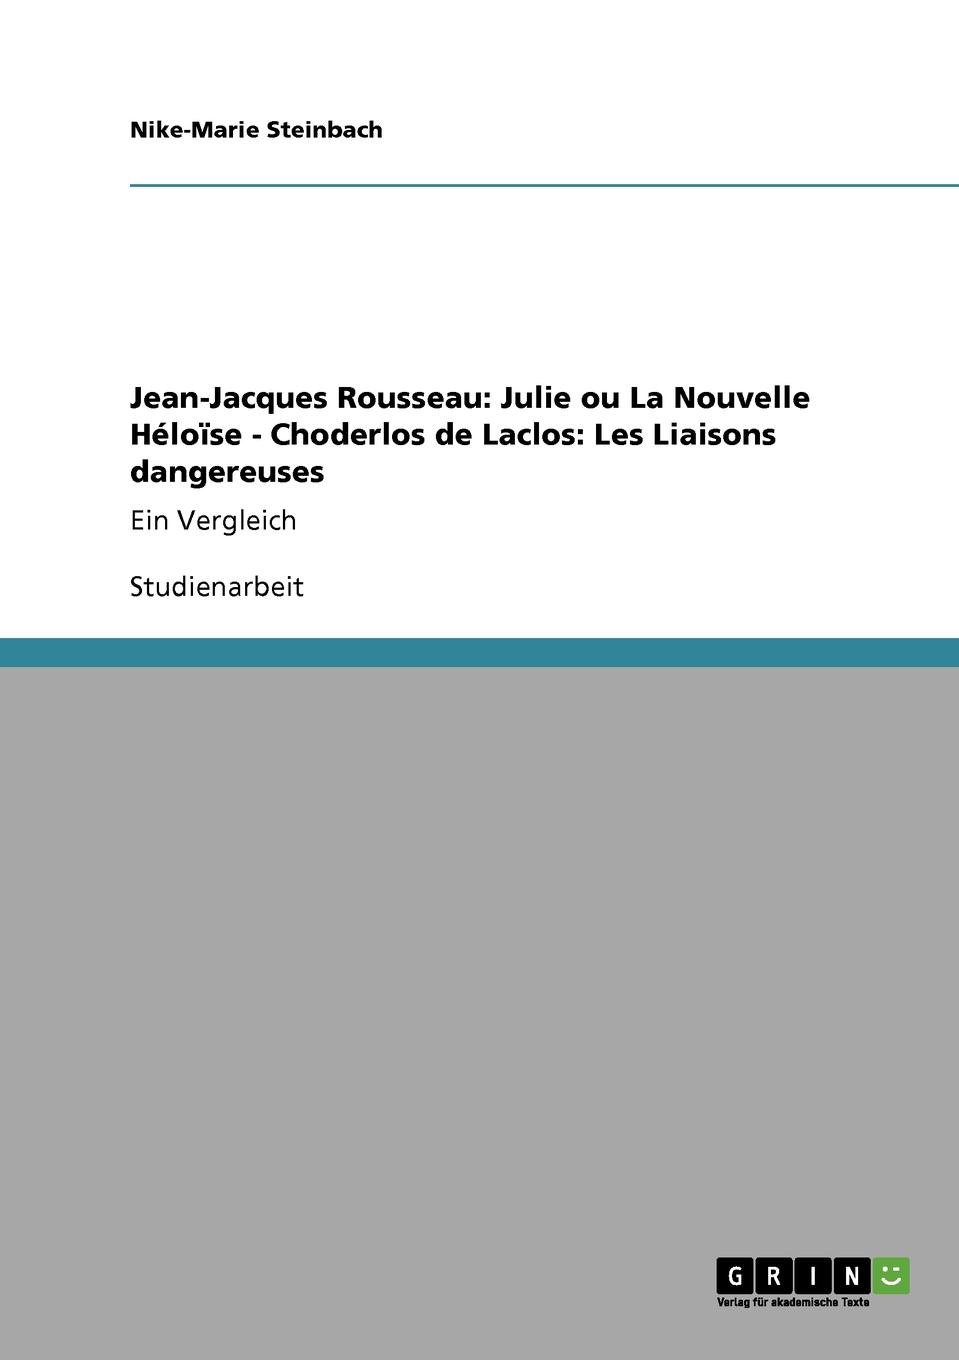 Jean-Jacques Rousseau. Julie ou La Nouvelle Heloise - Choderlos de Laclos: Les Liaisons dangereuses